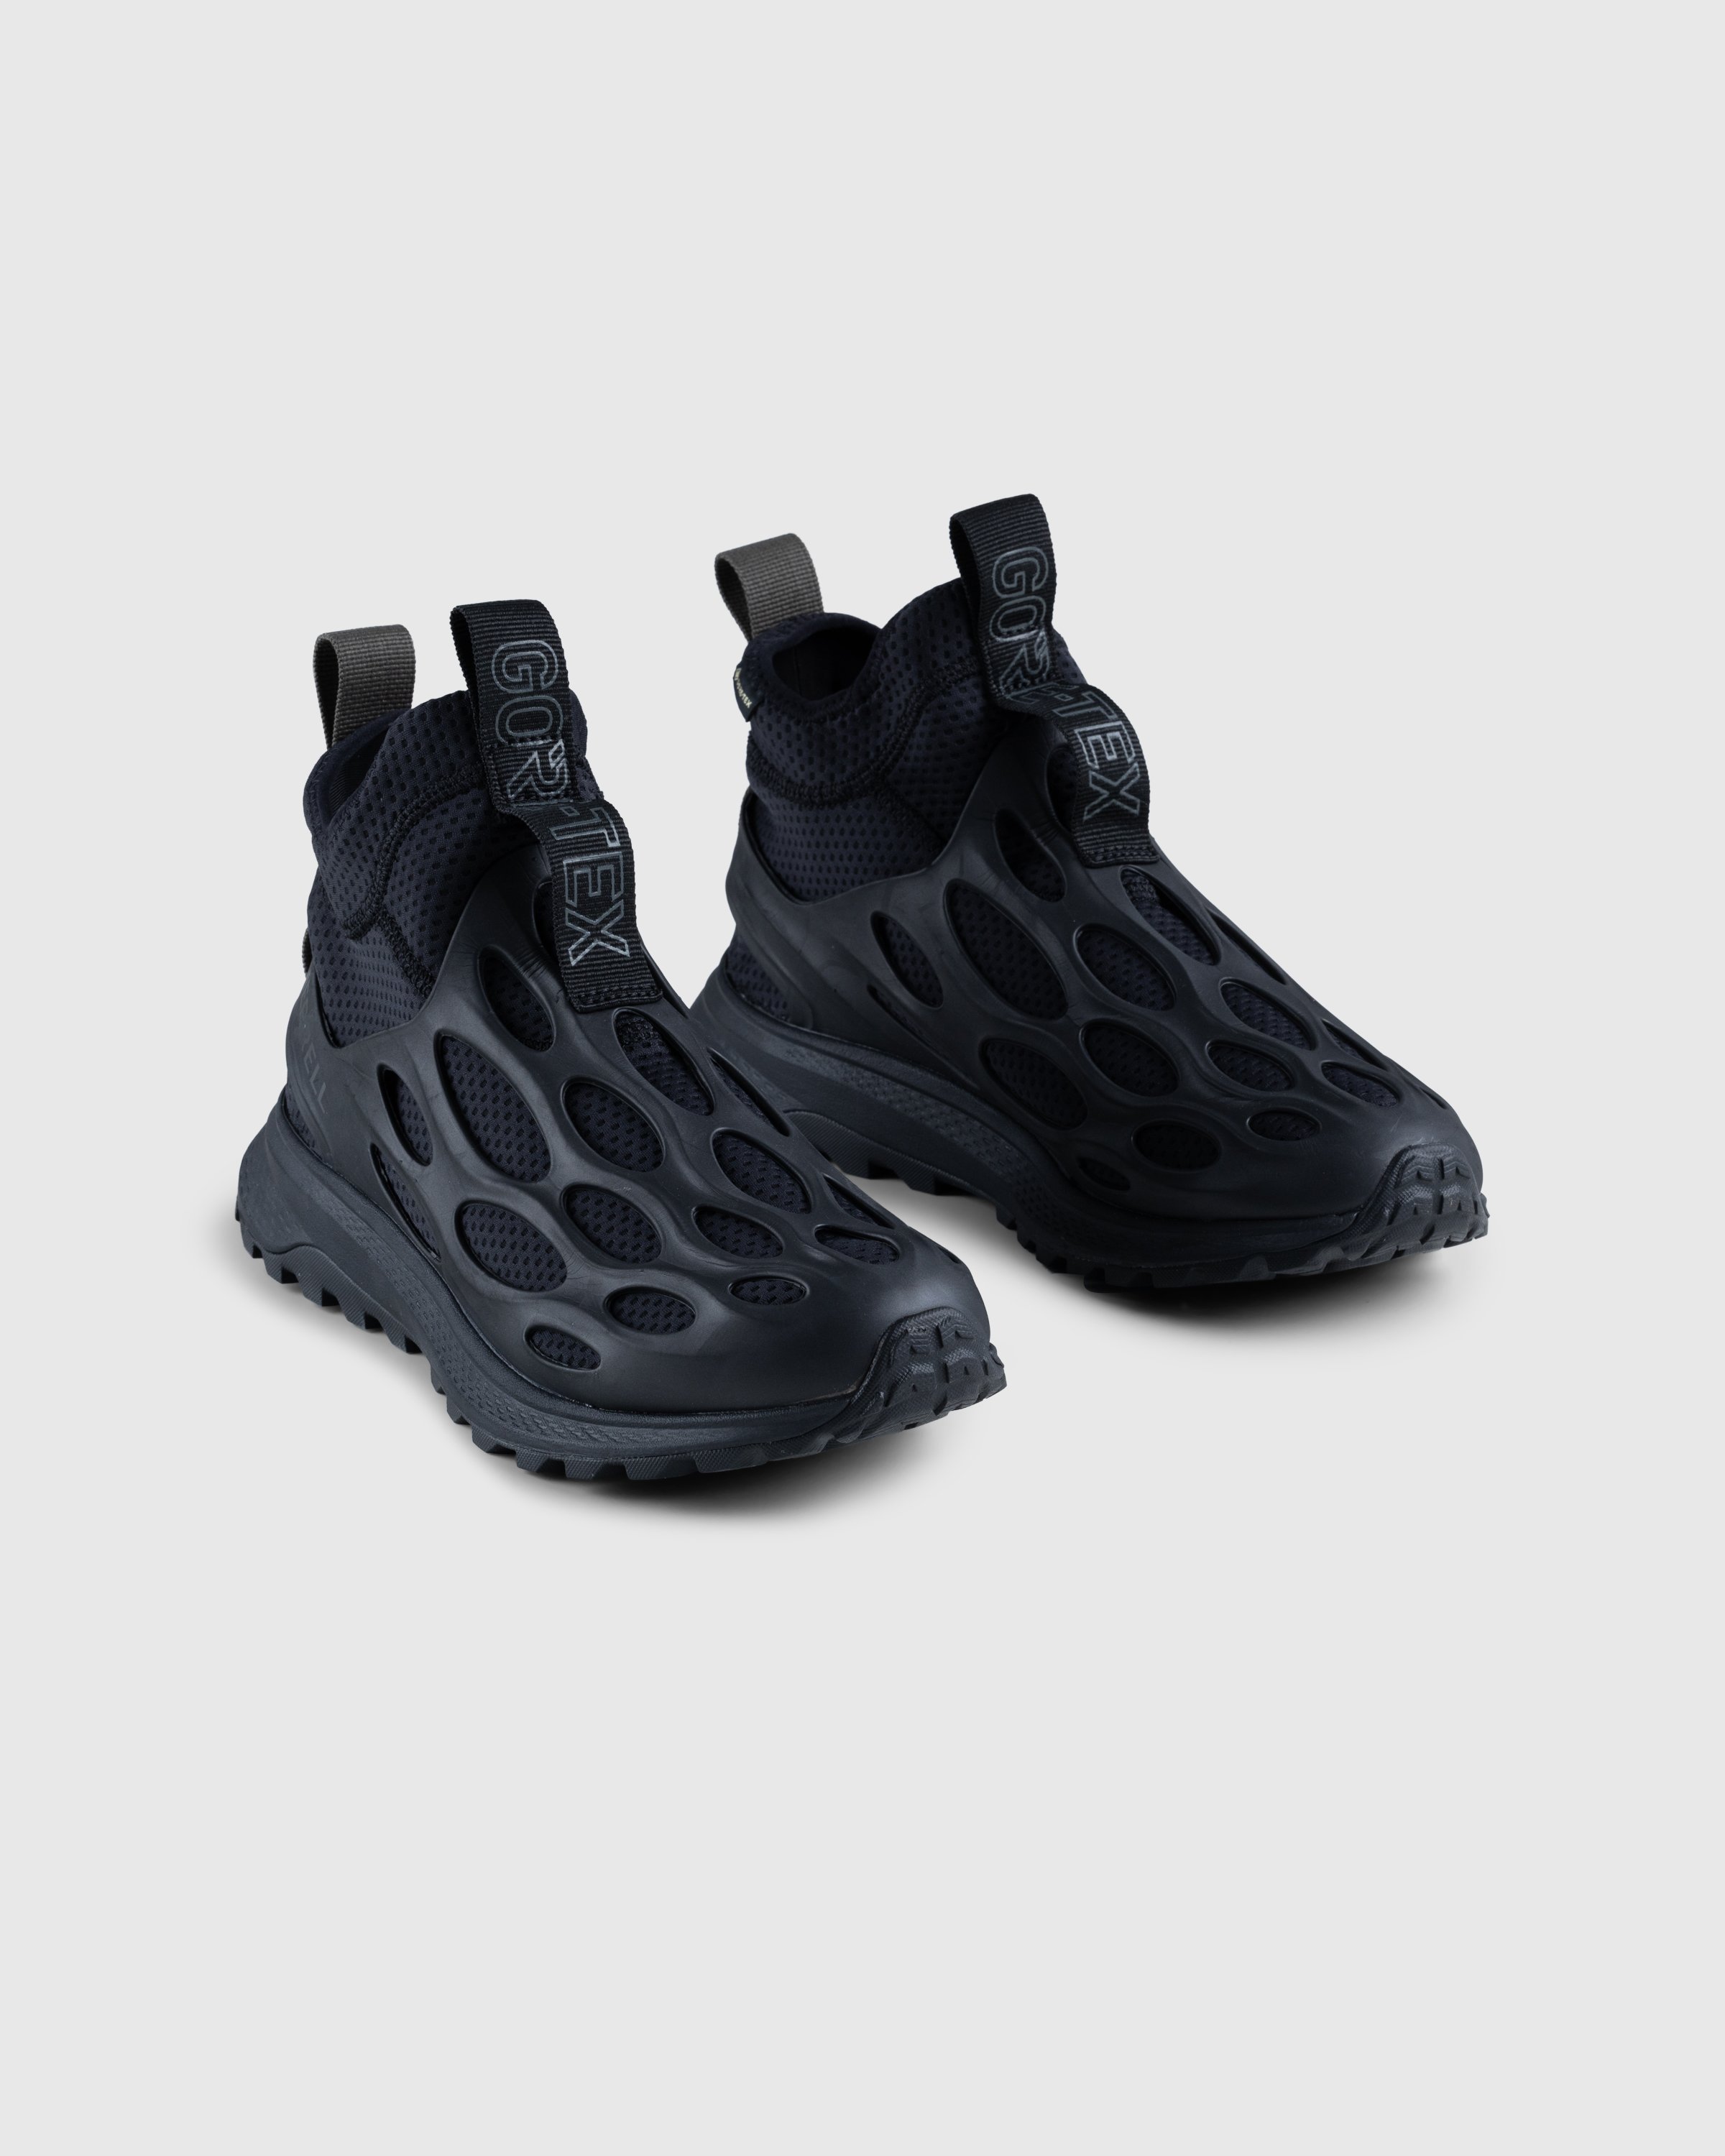 Merrell - HYDRO RUNNER MID GTX SE - Footwear - Black - Image 3